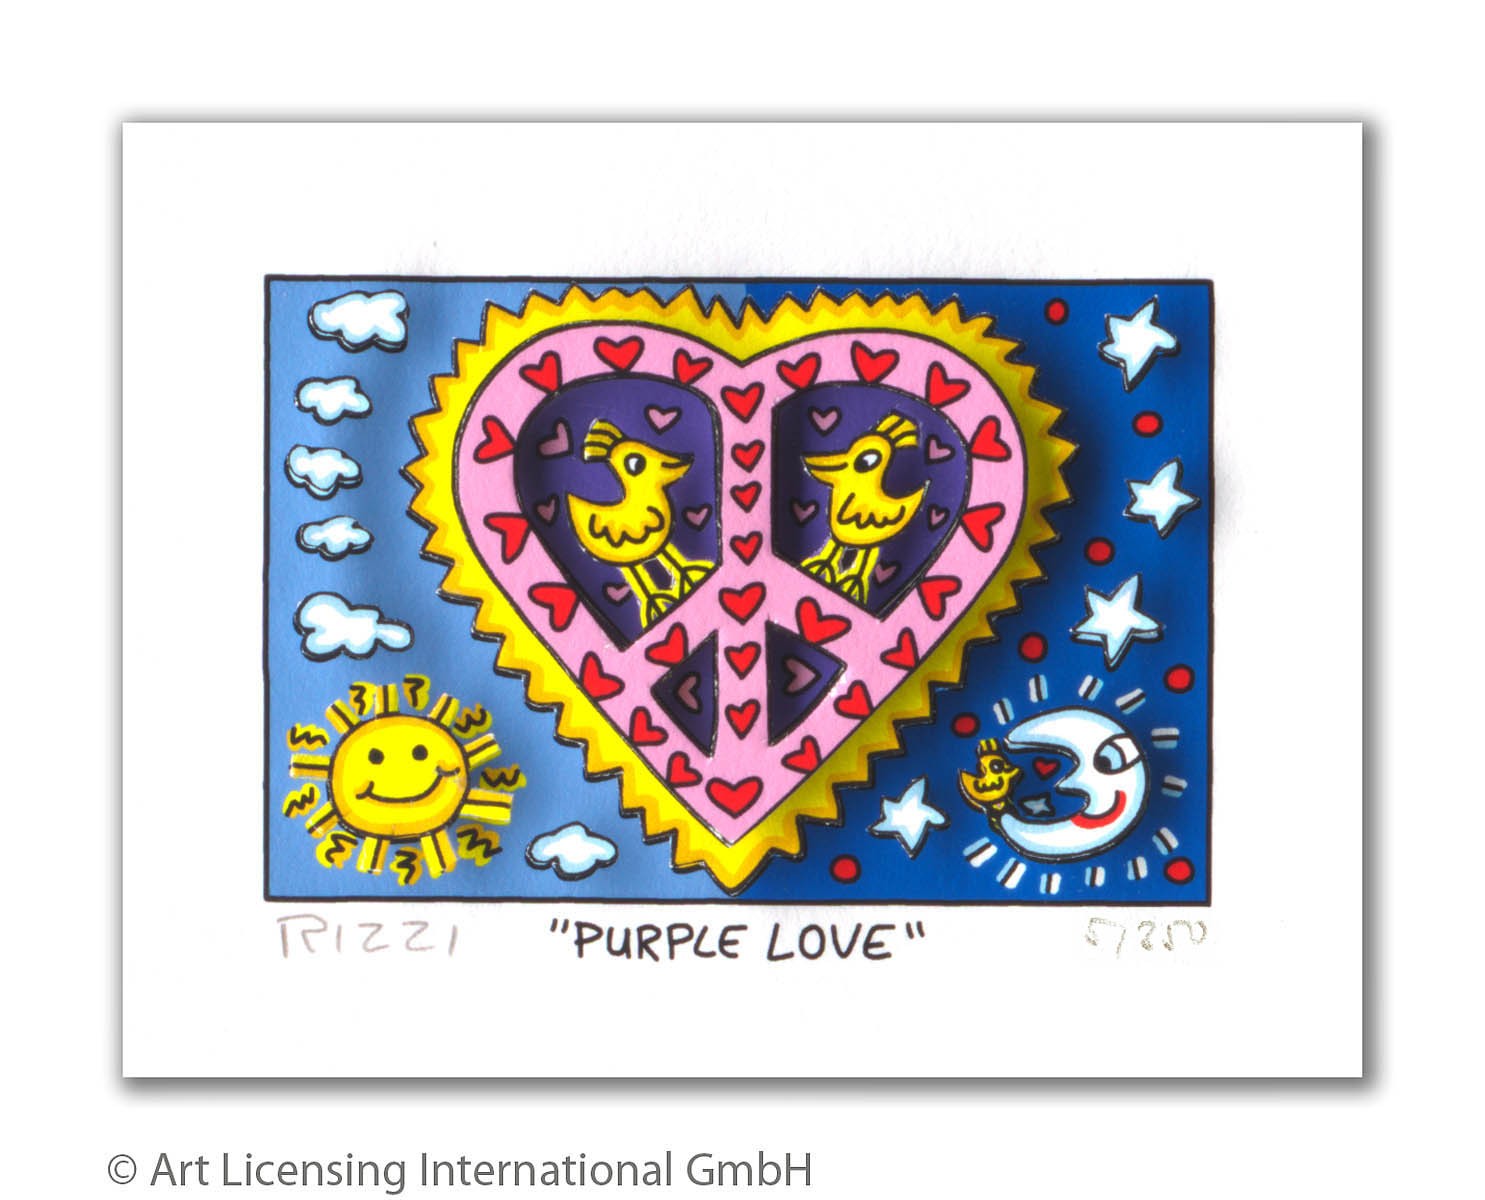 James Rizzi - PURPLE LOVE - Original 3D Bild drucksigniert - ohne Rahmen PP-Normale Nummer